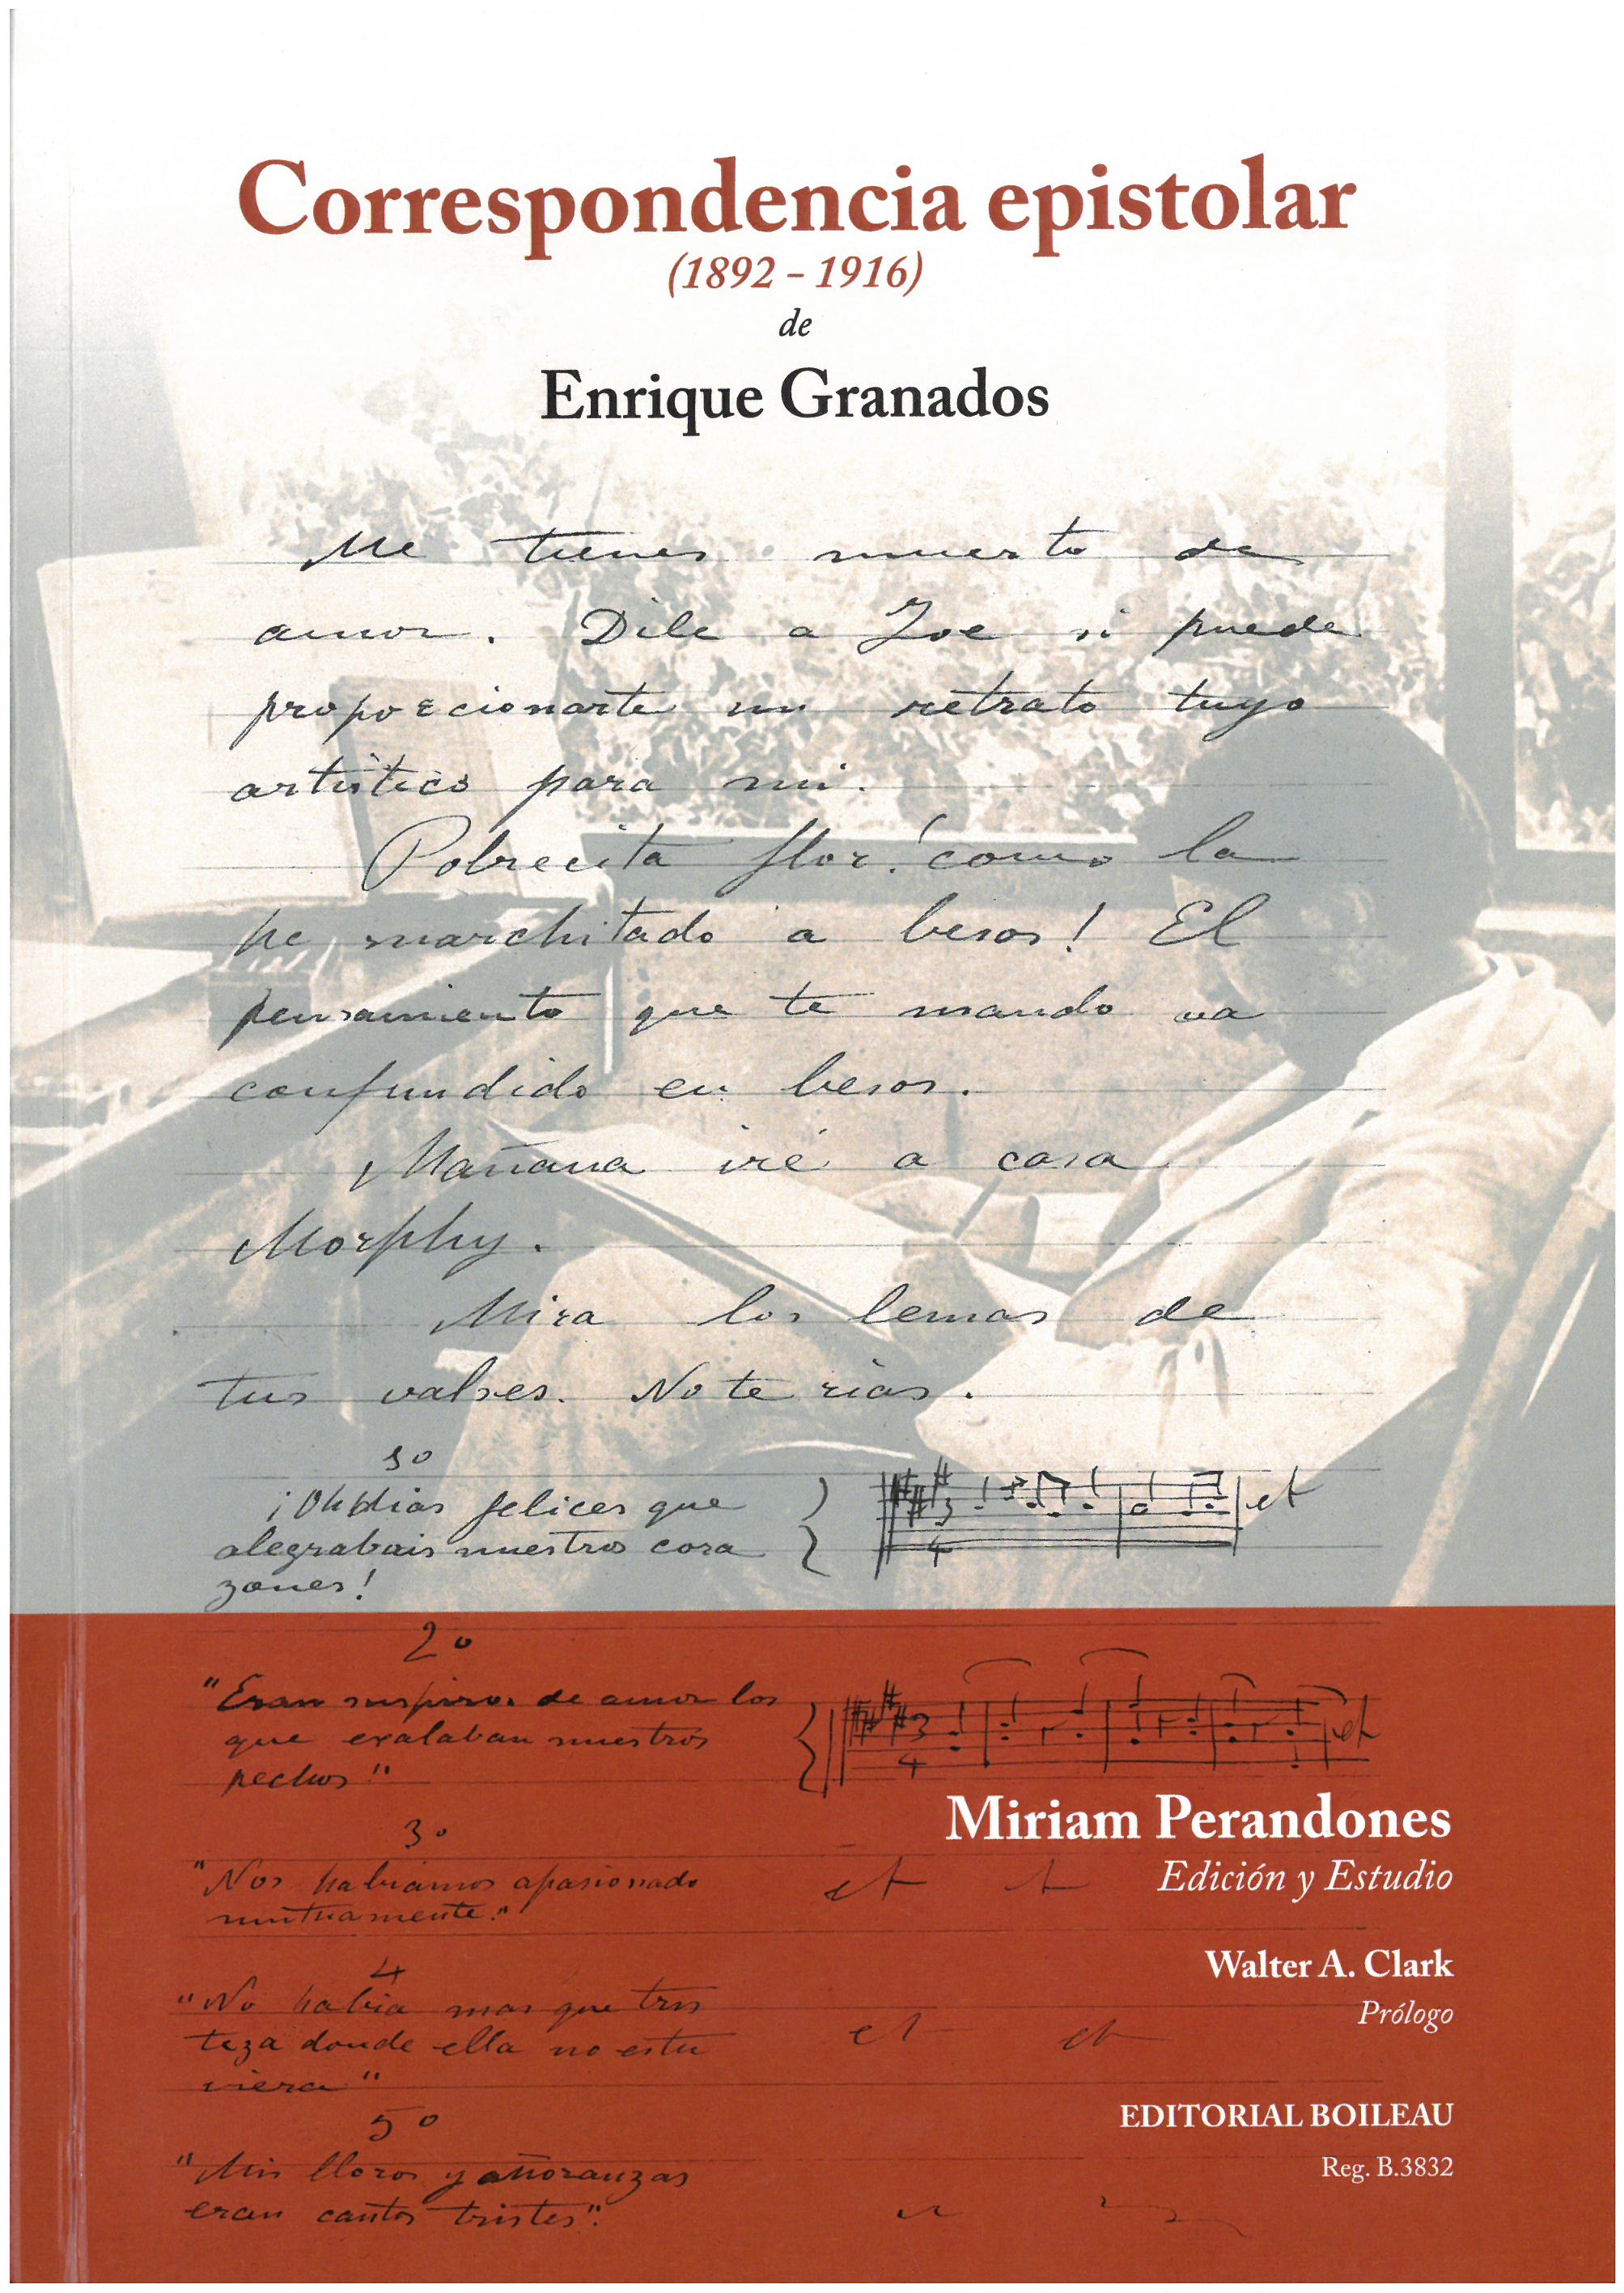 Imagen de portada del libro Correspondencia epistolar (1892-1916) de Enrique Granados